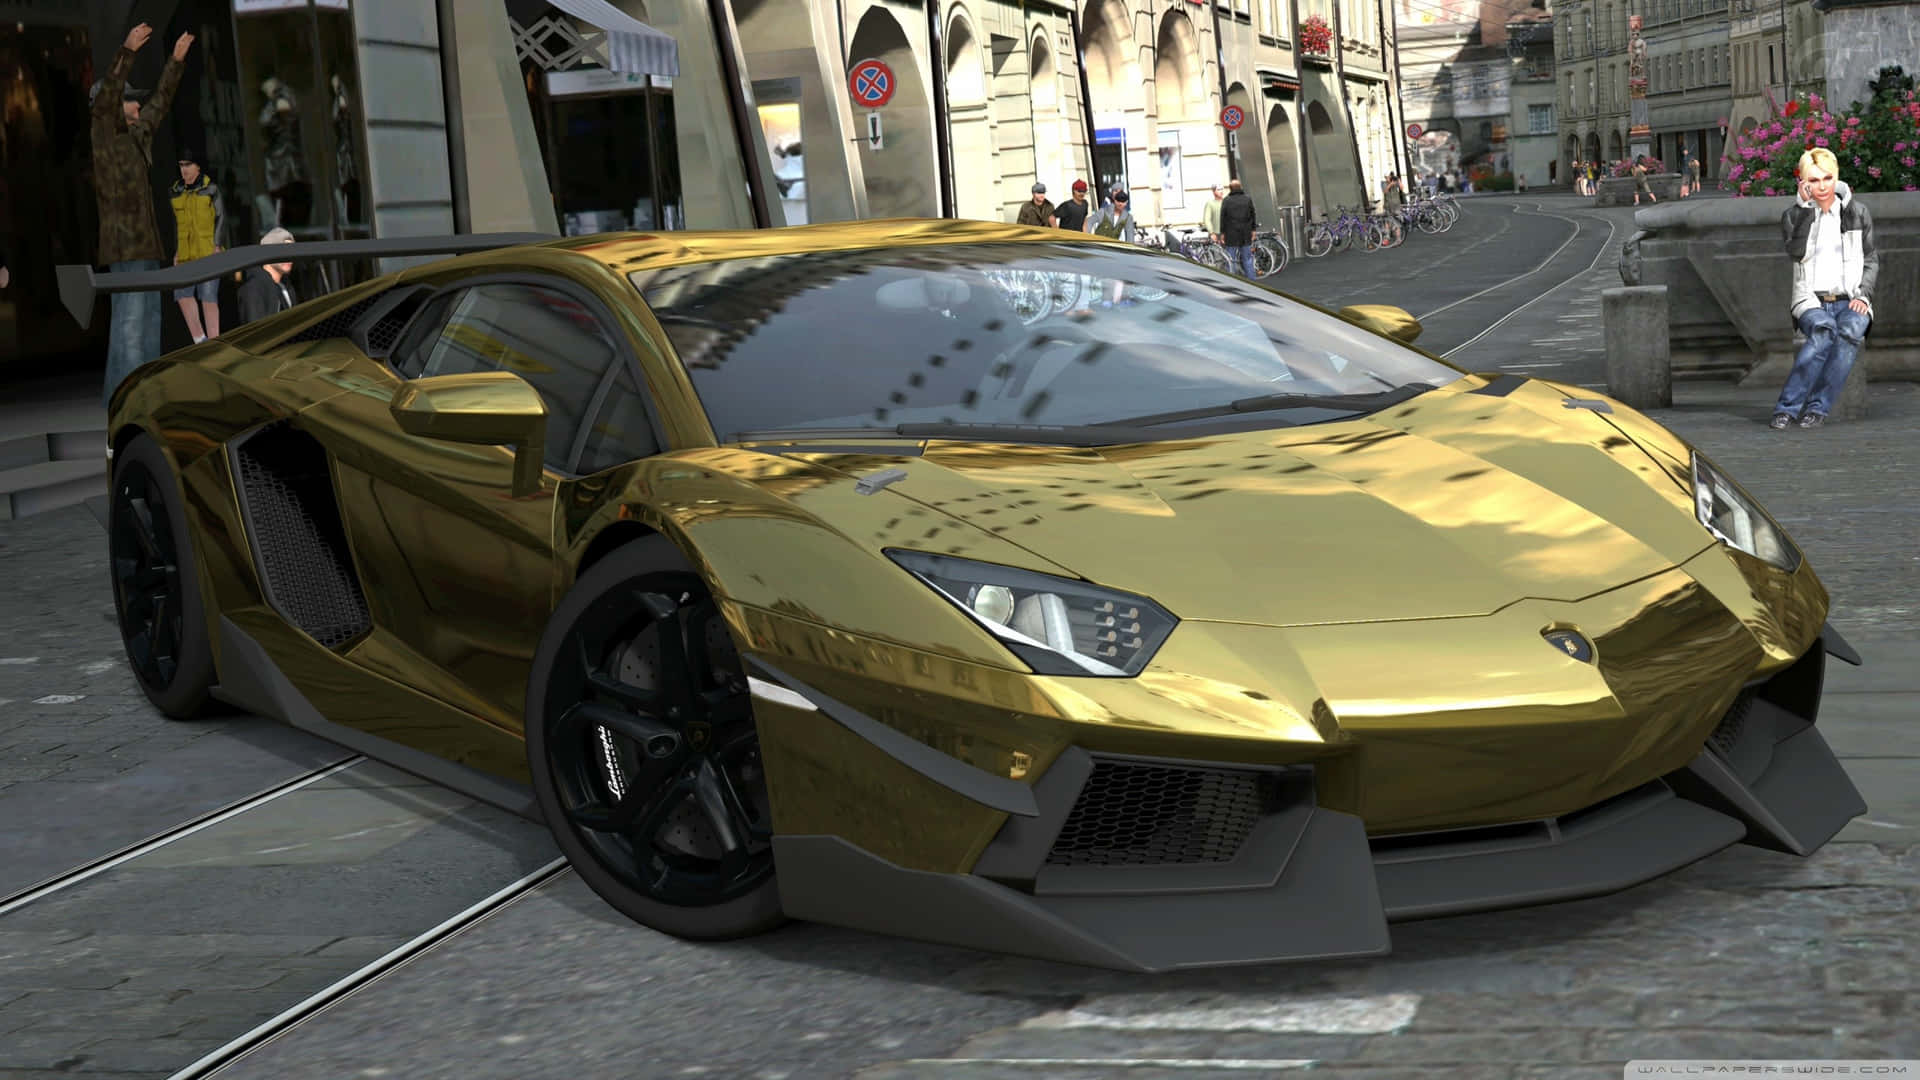 En guldbil er parkeret på gaden. Wallpaper